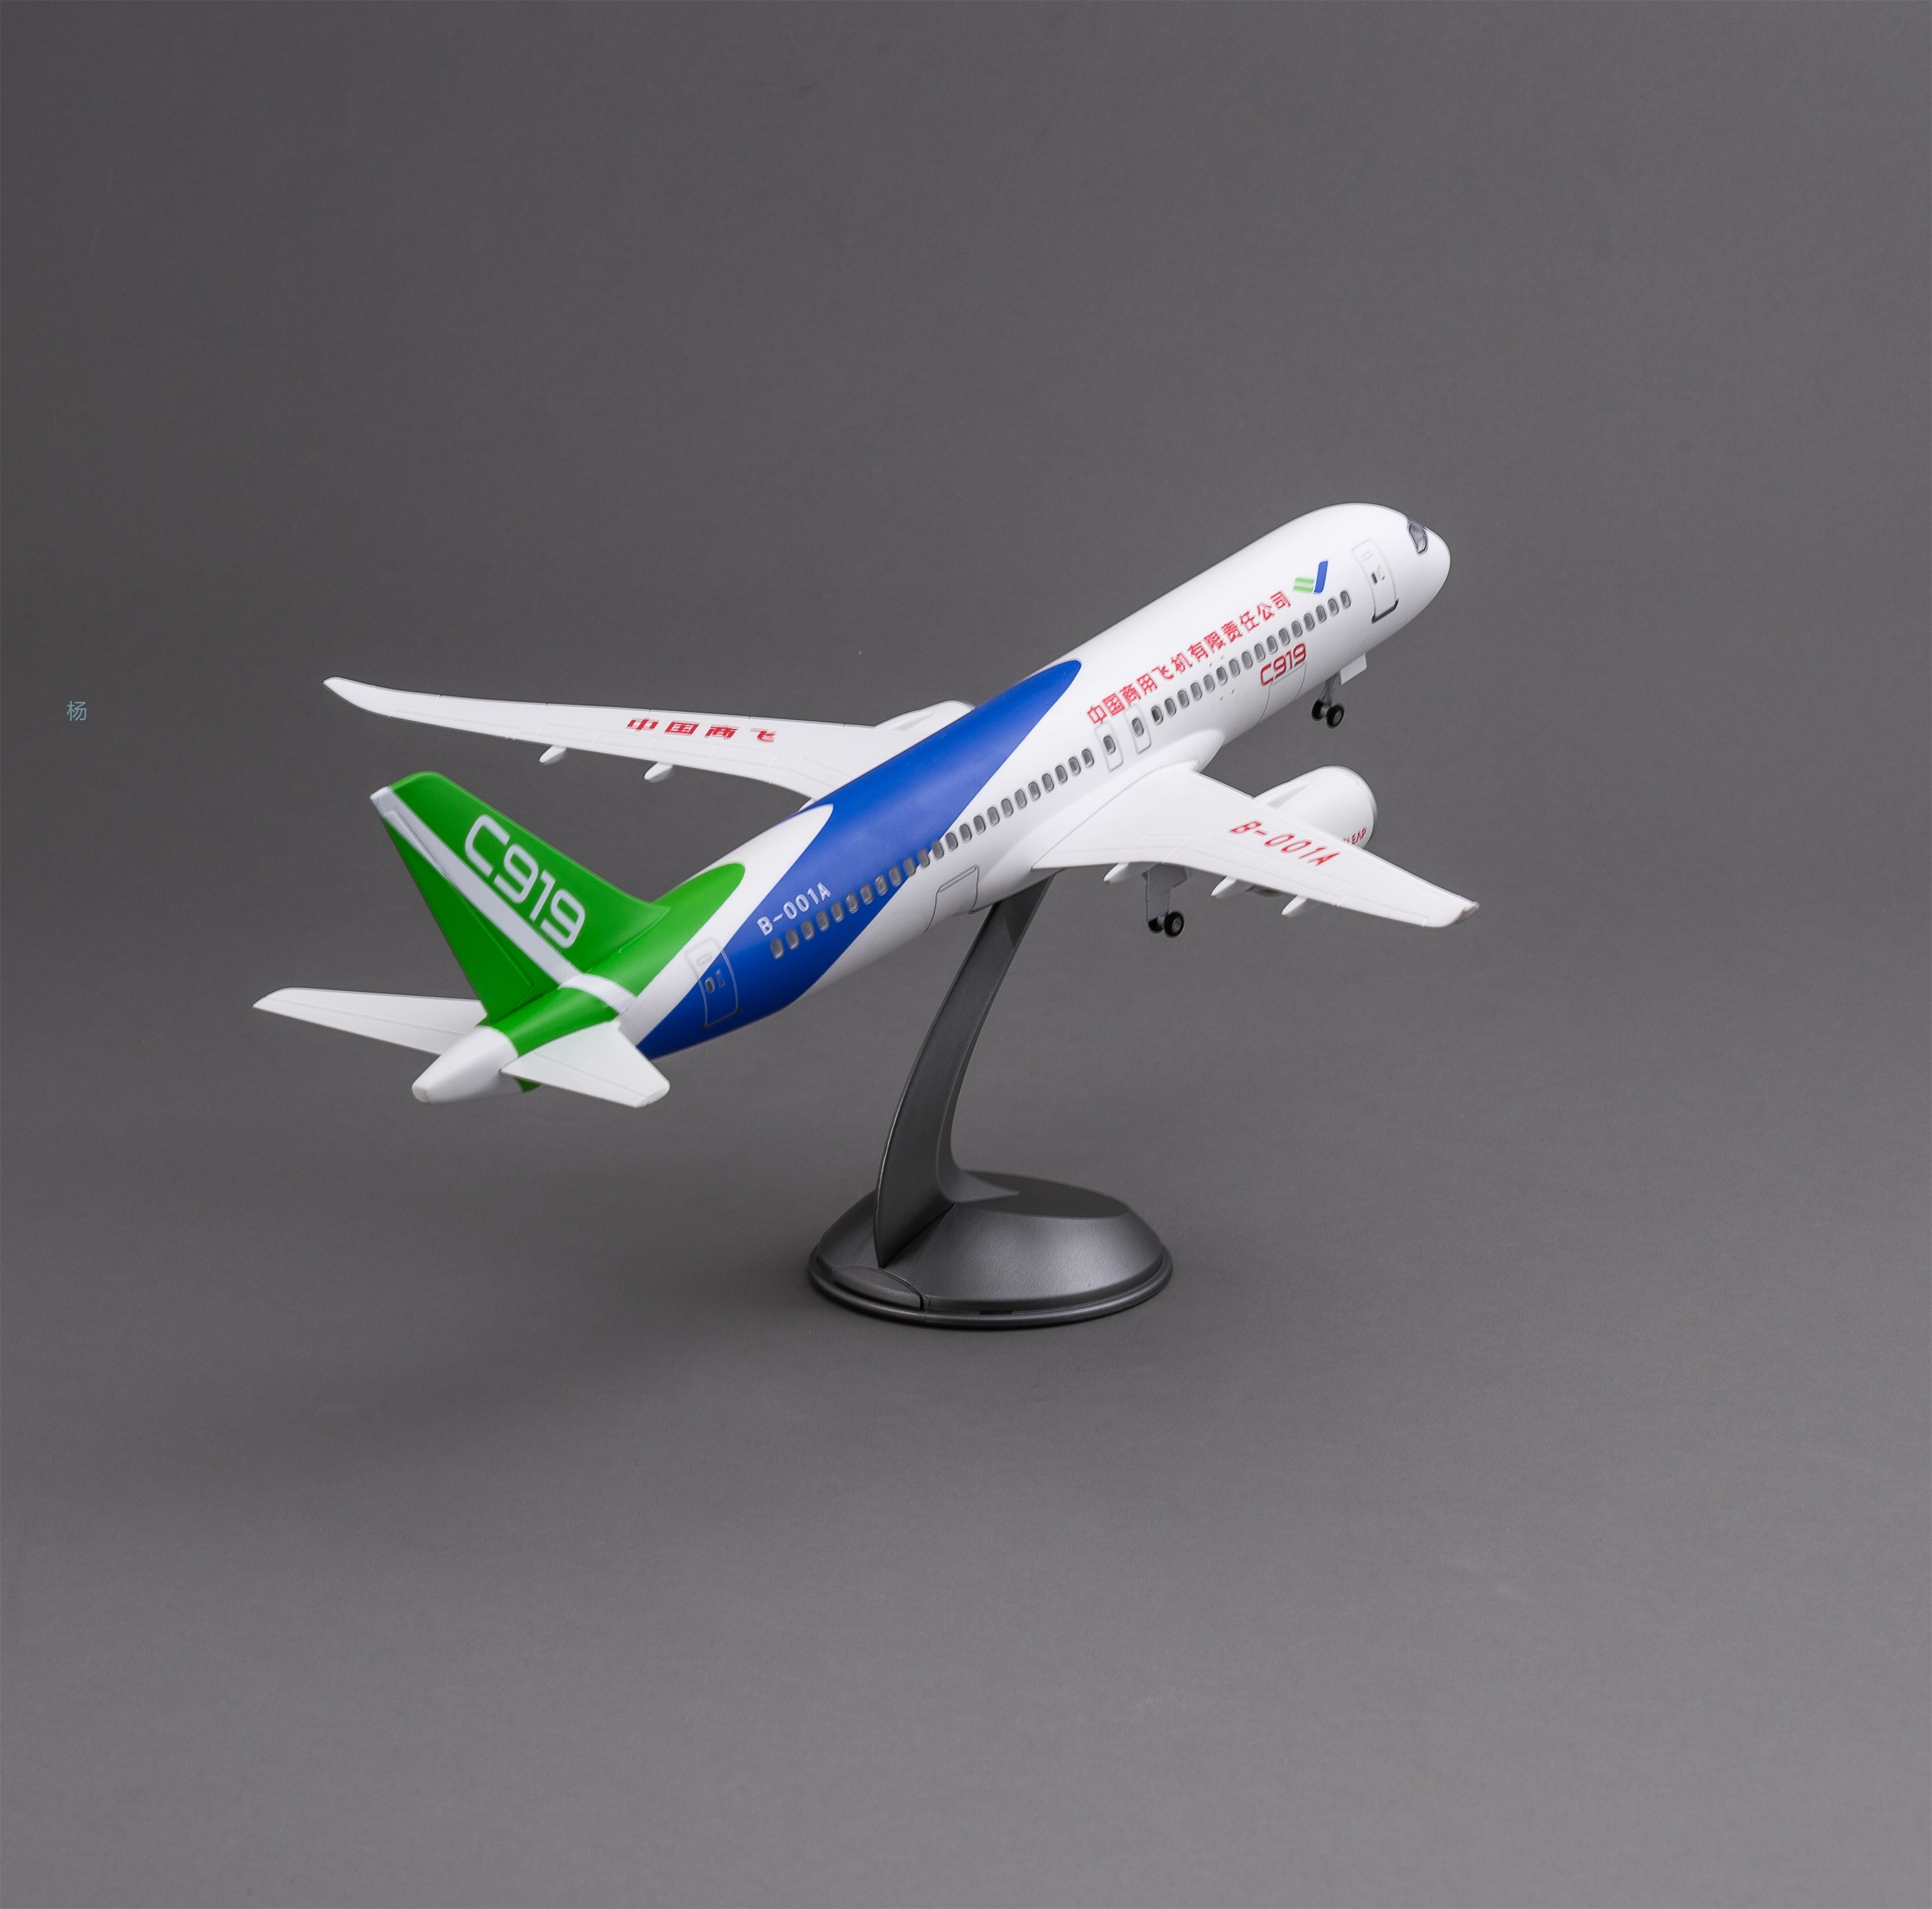 飞机模型（中国商用飞机有限责任公司C919飞机）仿真飞机模型 ABS合成强化树脂飞机模型航空飞机模型详情3